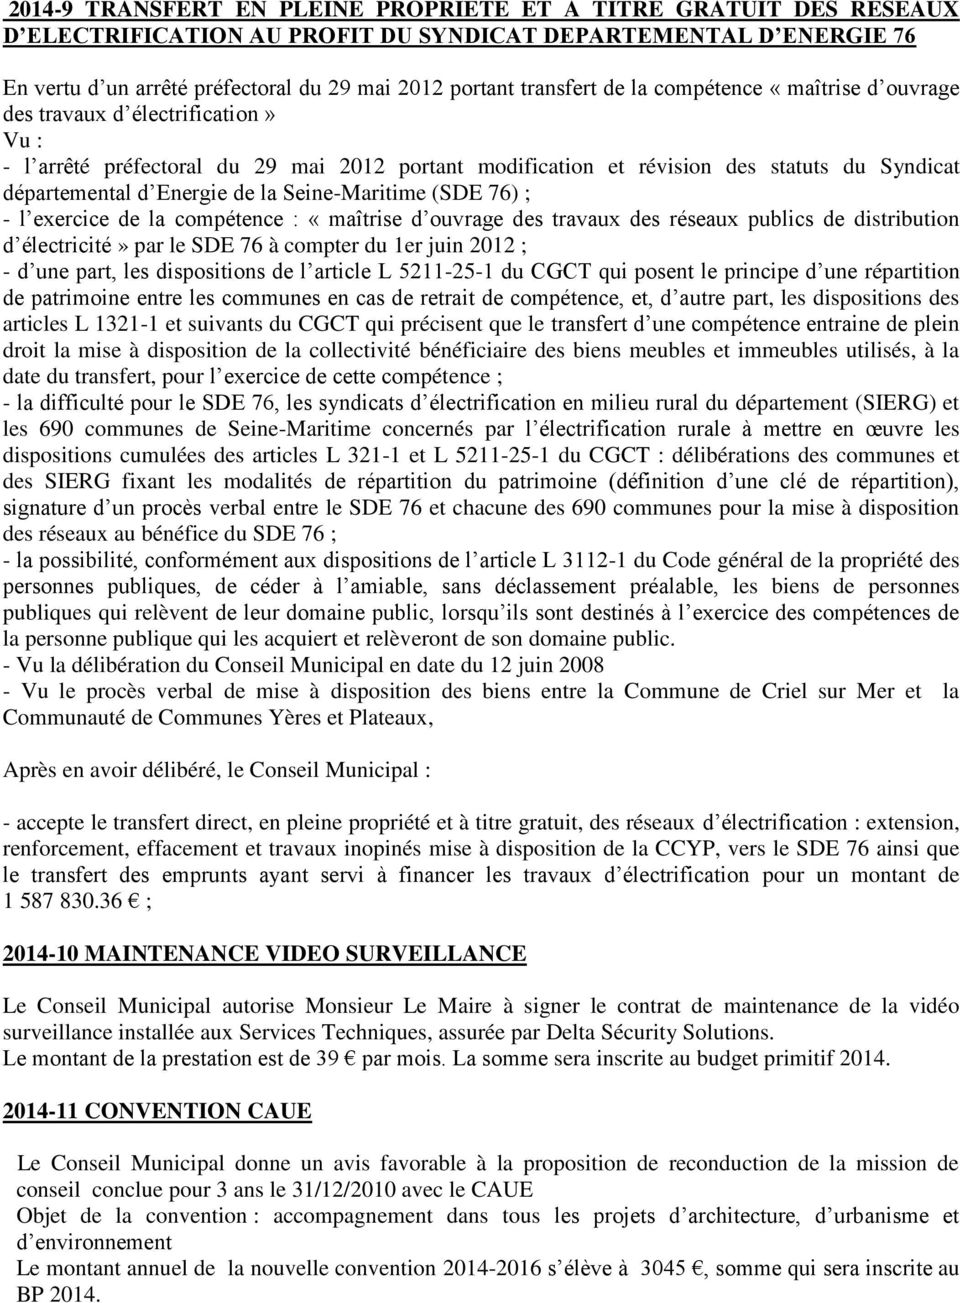 Energie de la Seine-Maritime (SDE 76) ; - l exercice de la compétence : «maîtrise d ouvrage des travaux des réseaux publics de distribution d électricité» par le SDE 76 à compter du 1er juin 2012 ; -